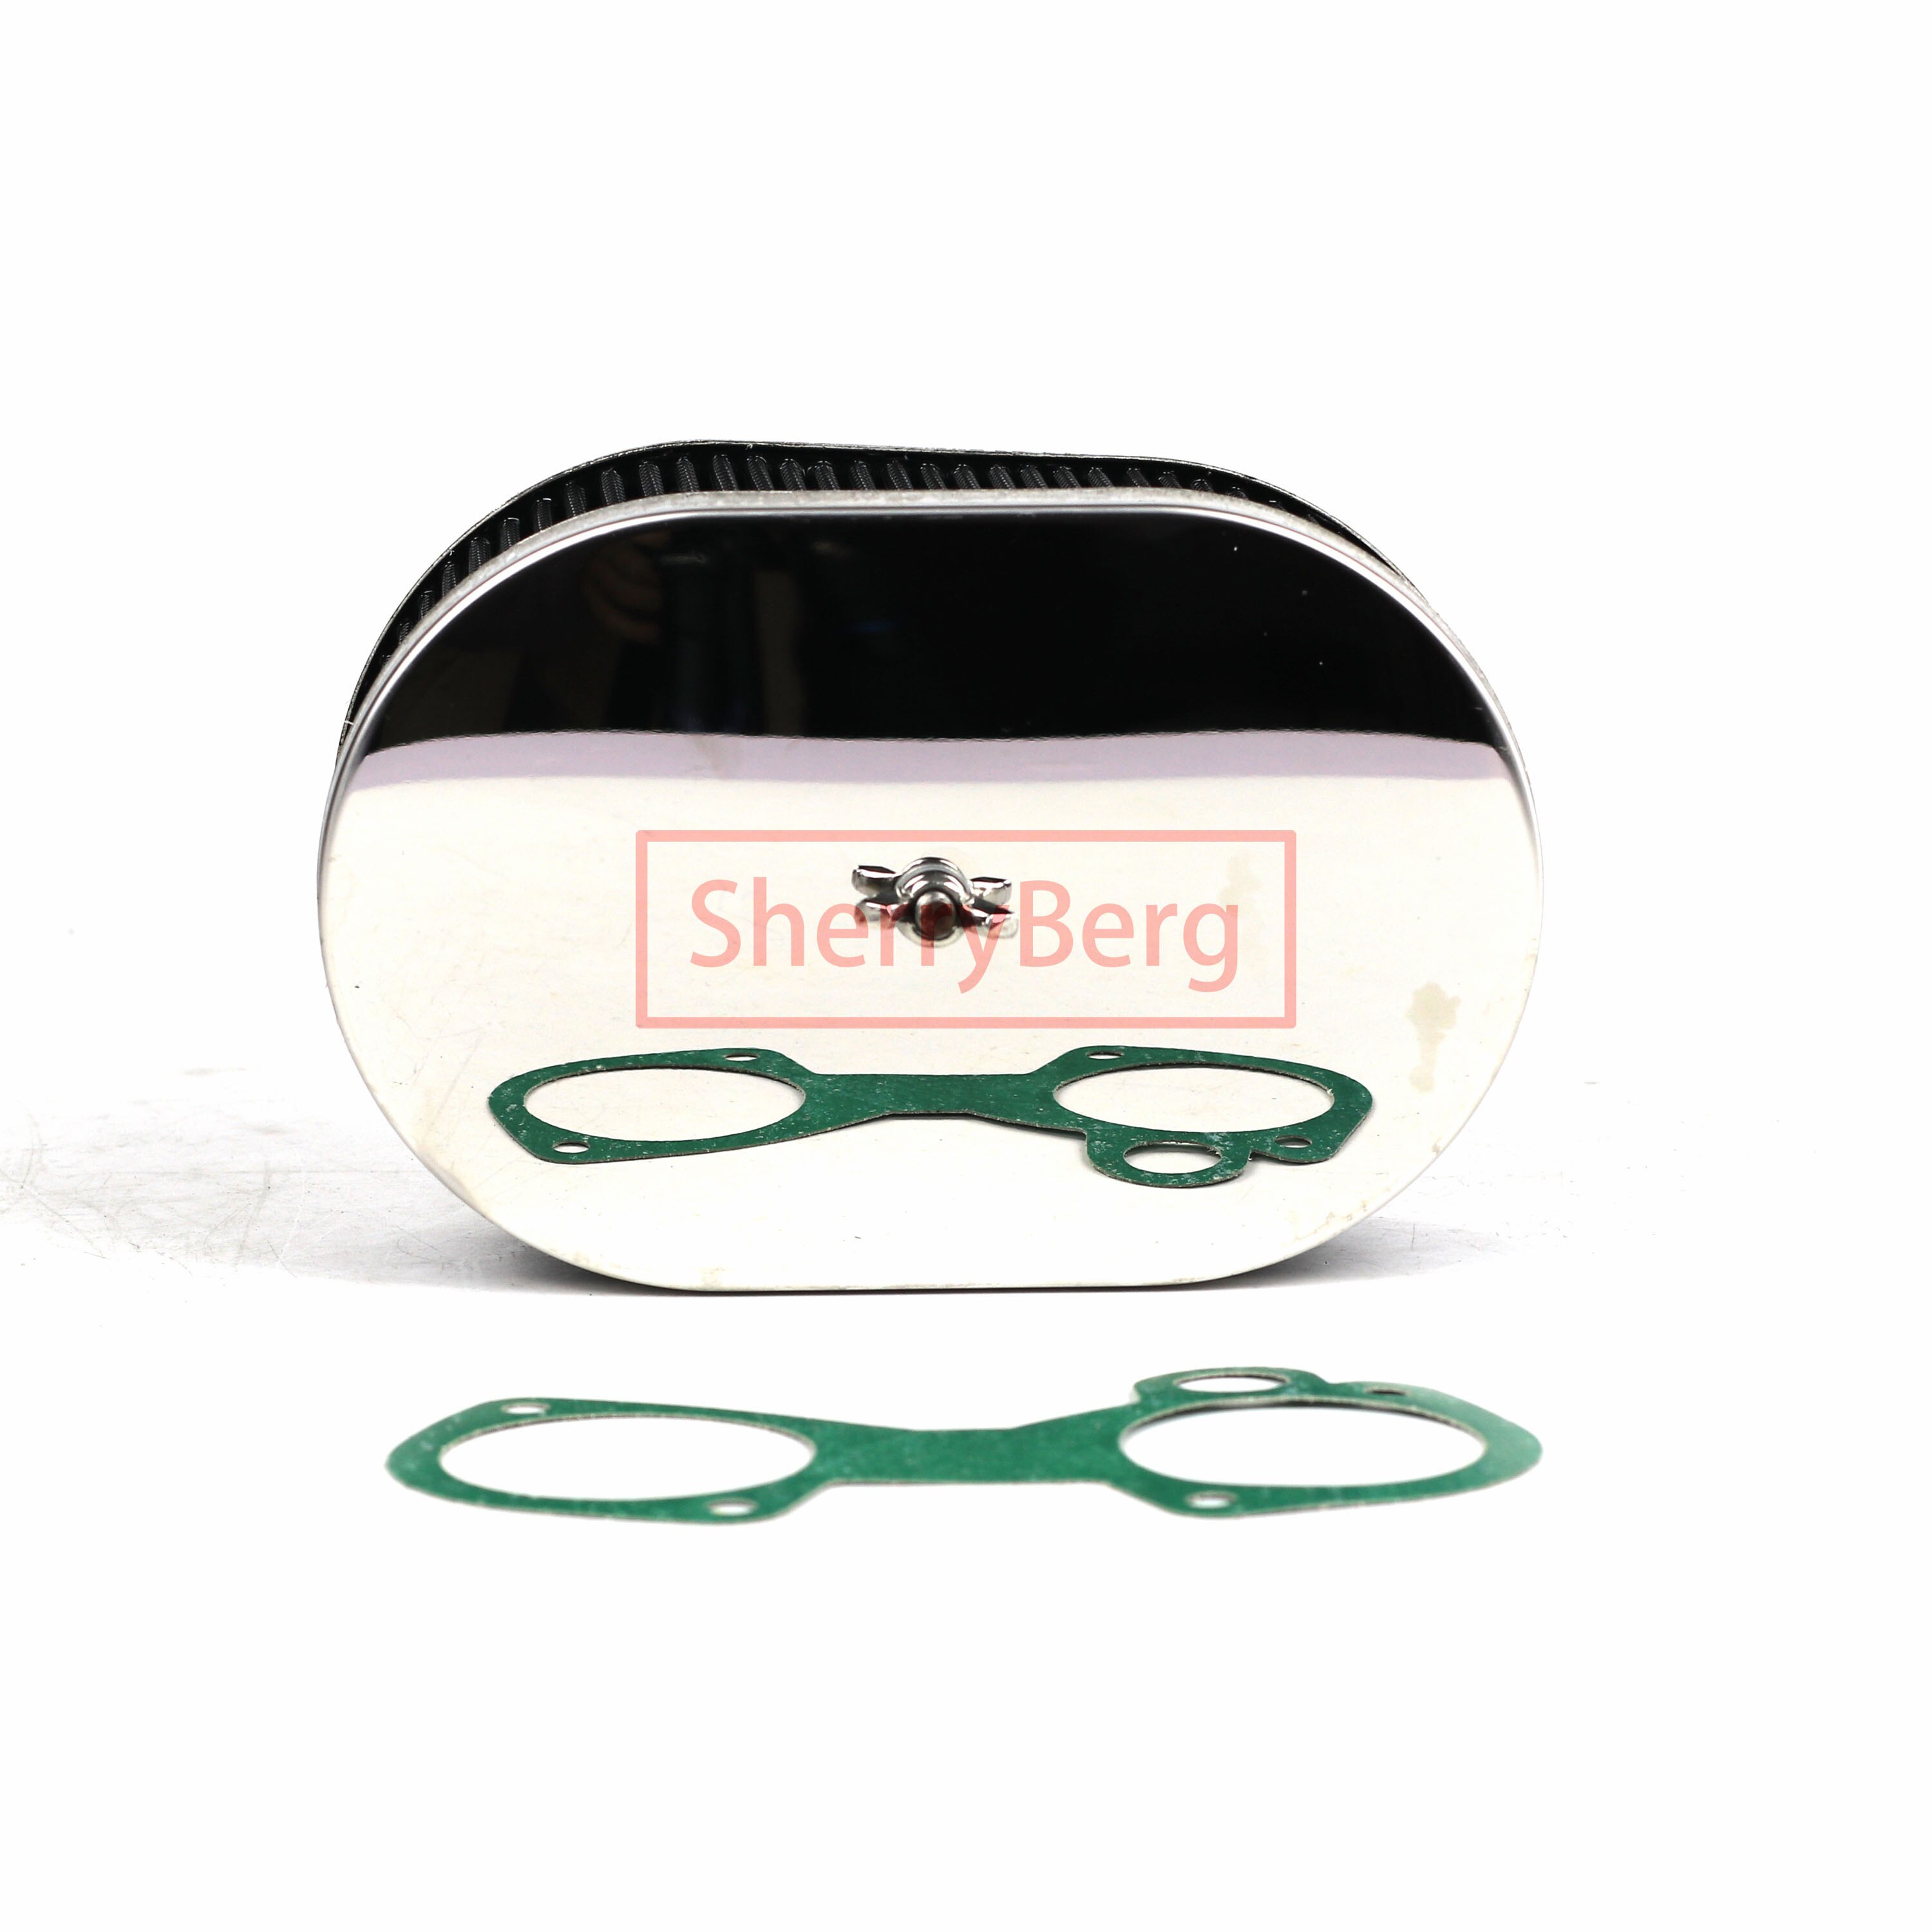 Sherryberg fajs empi luftfilter 65mm 2 " 1/2 rengøringsmiddel til weber 40 45 48 50 dcoe, solex addhe, dellorto dhla karburator carb filter